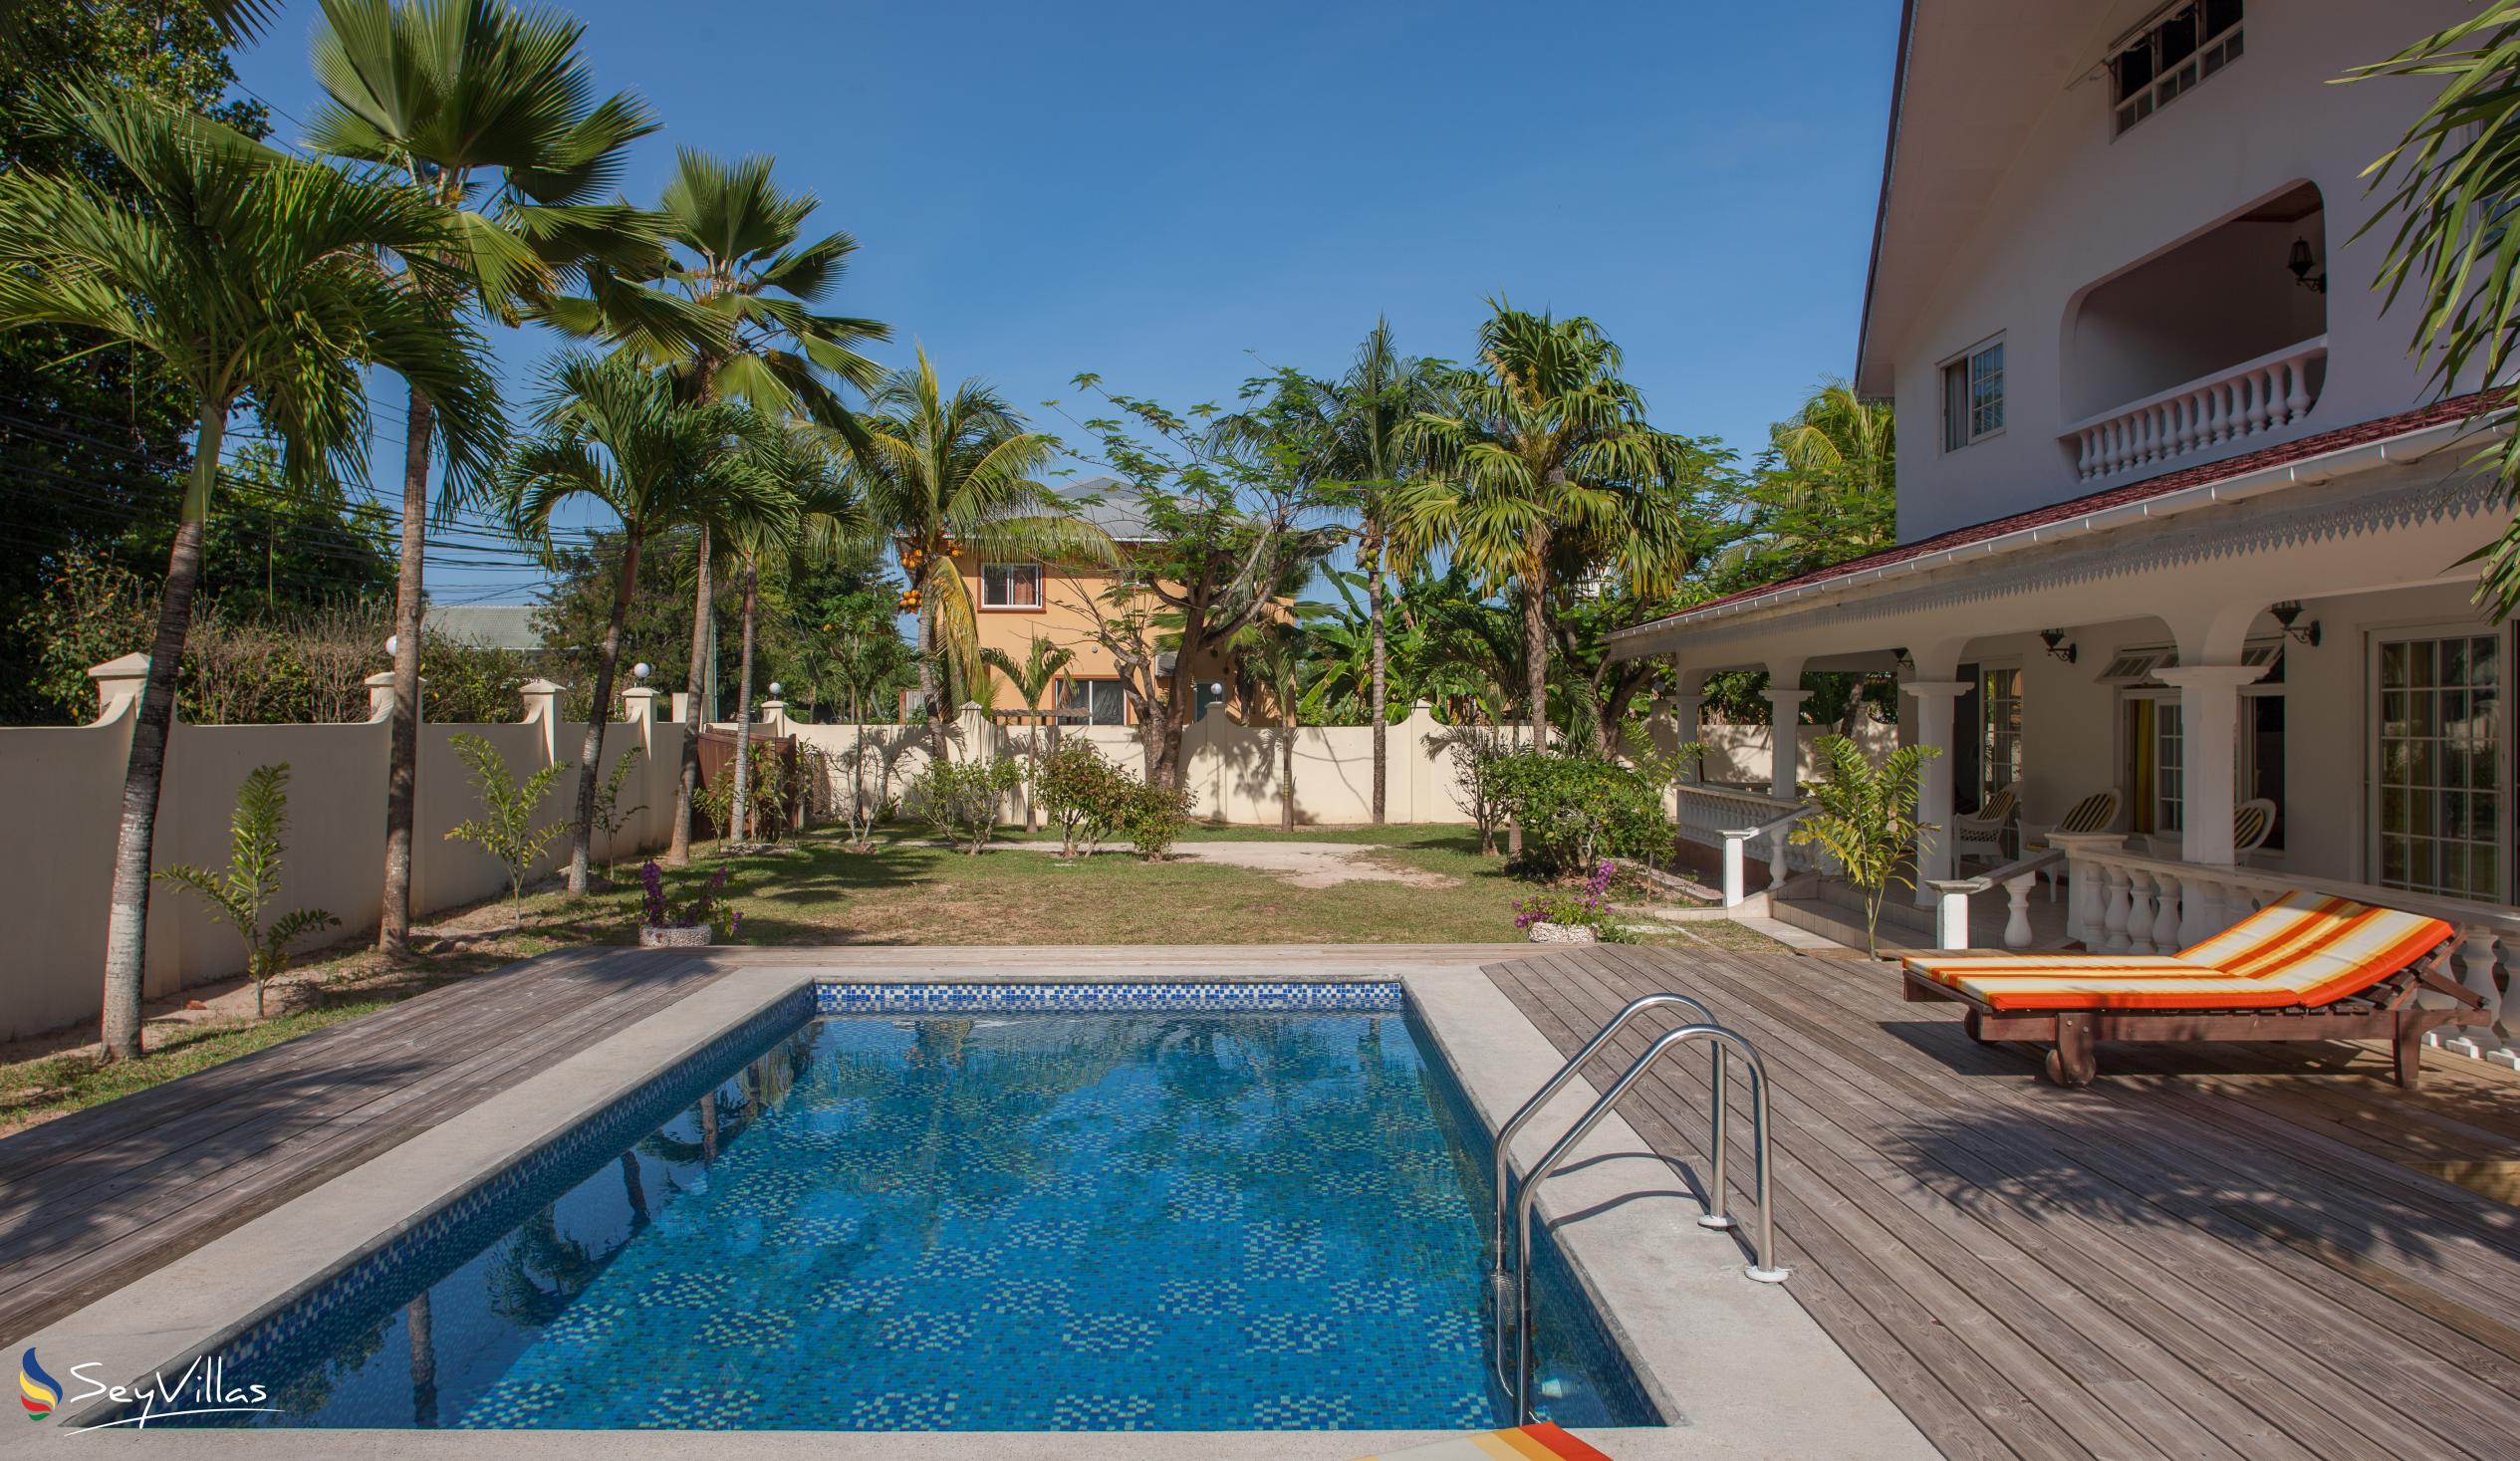 Foto 7: Villa Confort - Aussenbereich - Praslin (Seychellen)